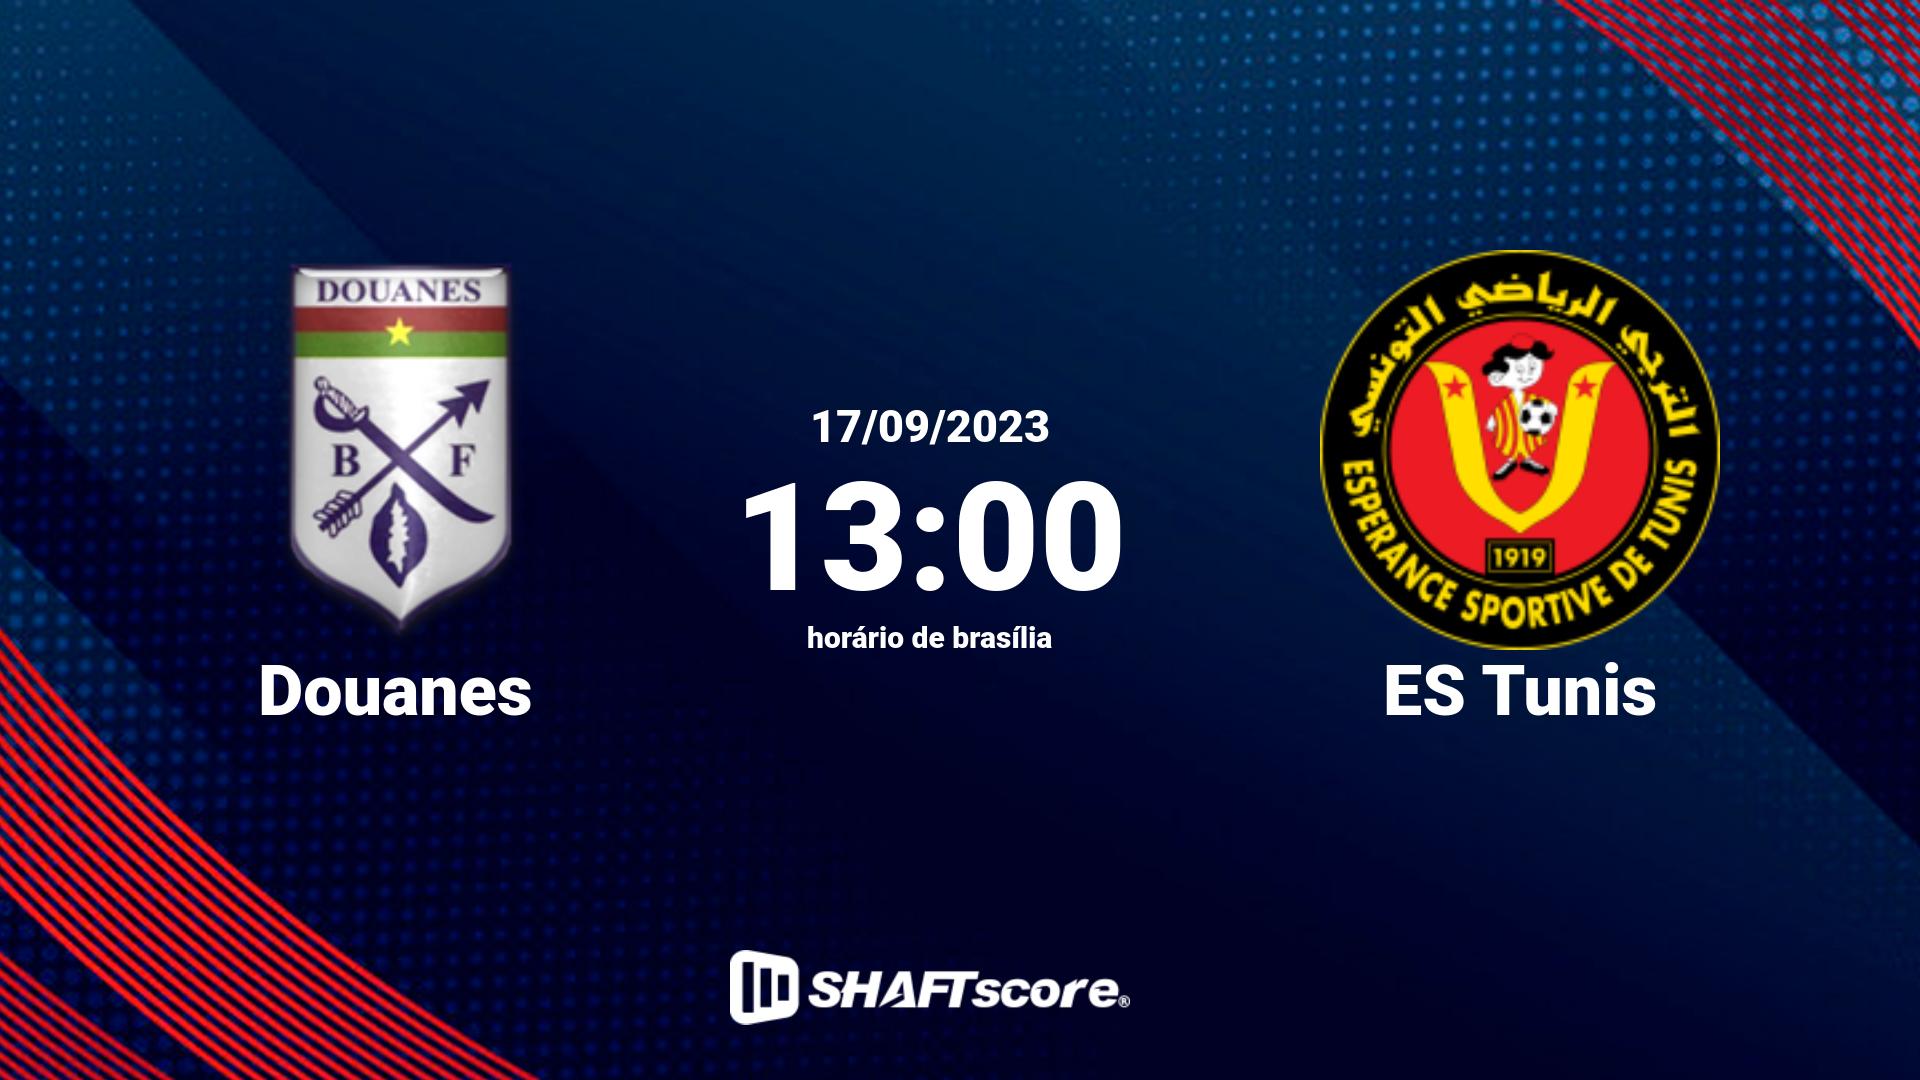 Estatísticas do jogo Douanes vs ES Tunis 17.09 13:00